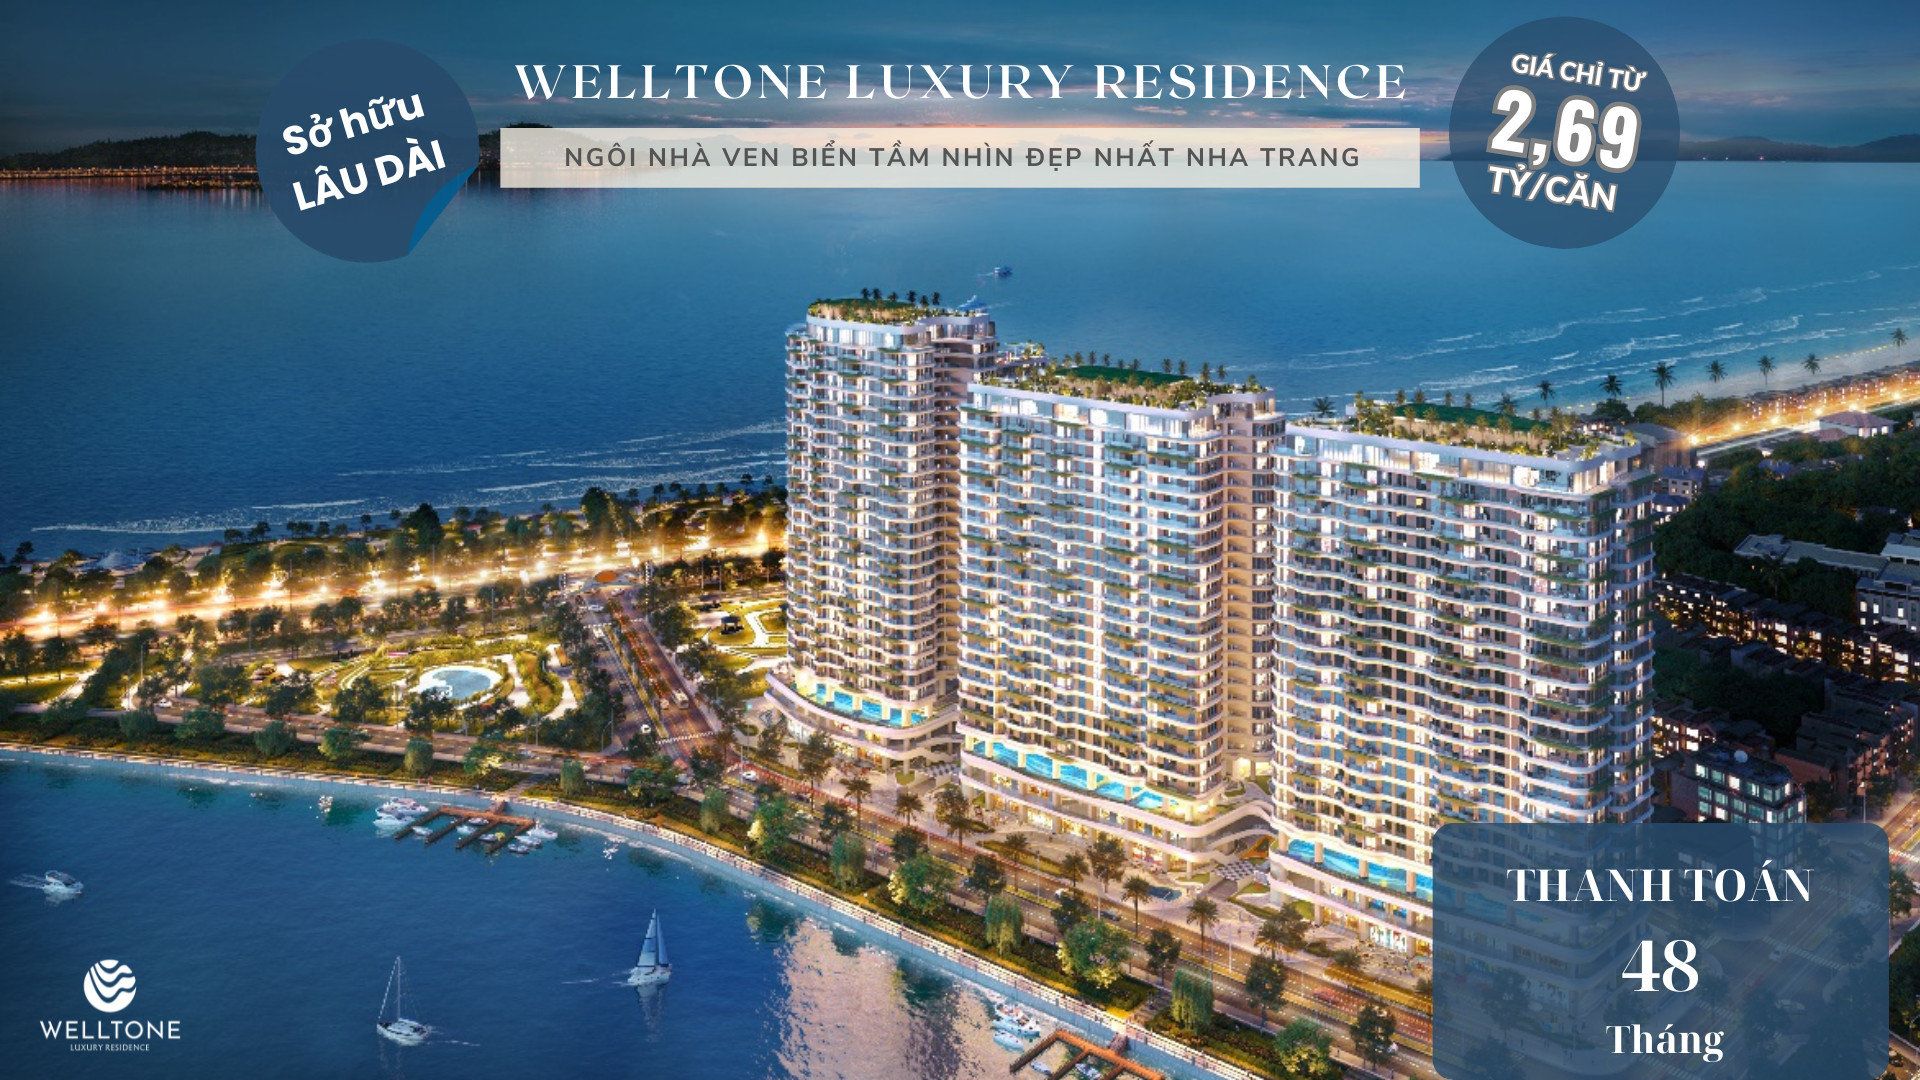 Chất lượng căn hộ welltone luxury residence